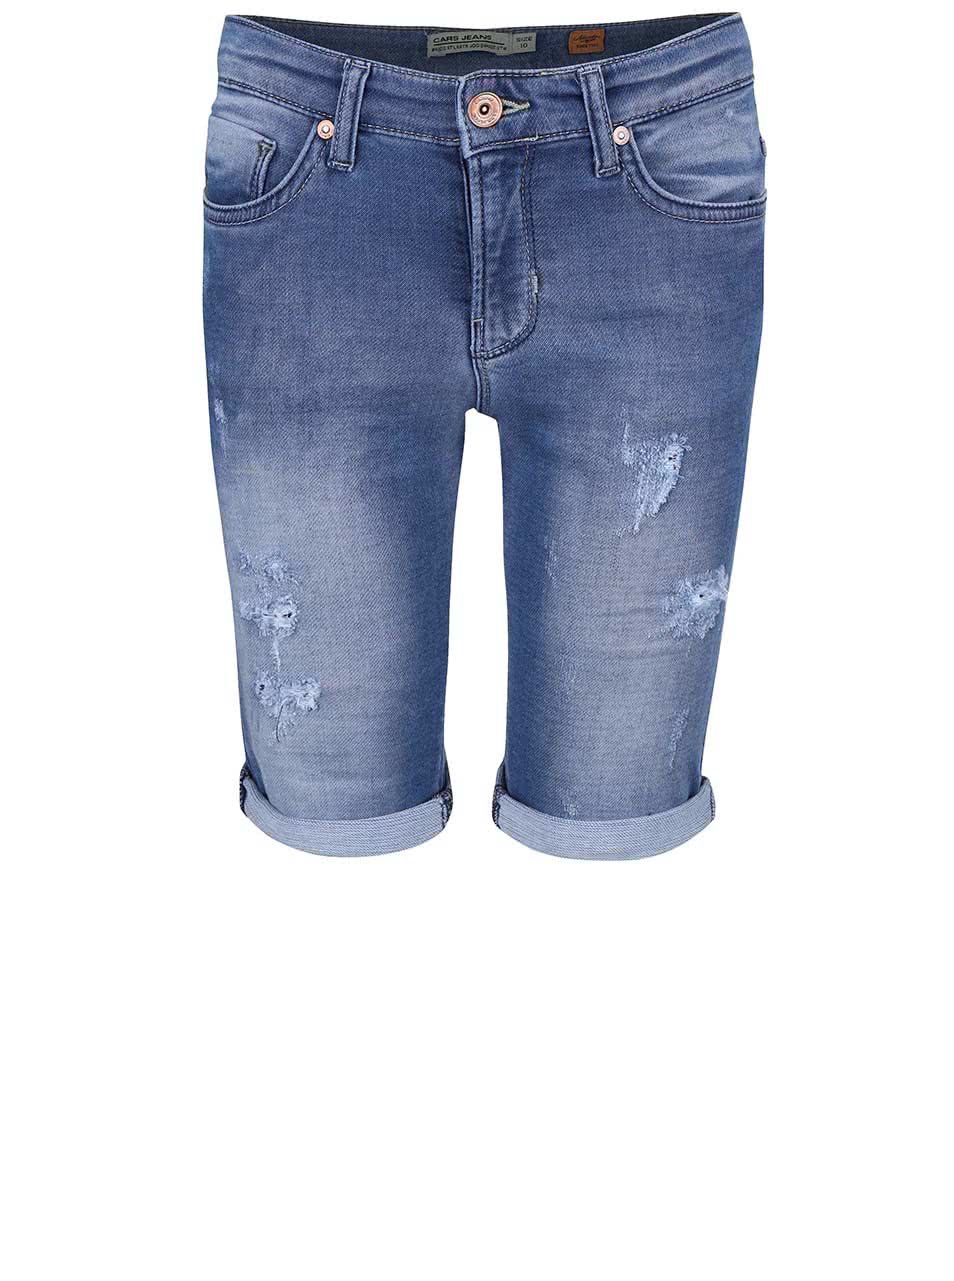 Modré klučičí džínové kraťasy s odřeným efektem Cars Jeans Atlanta